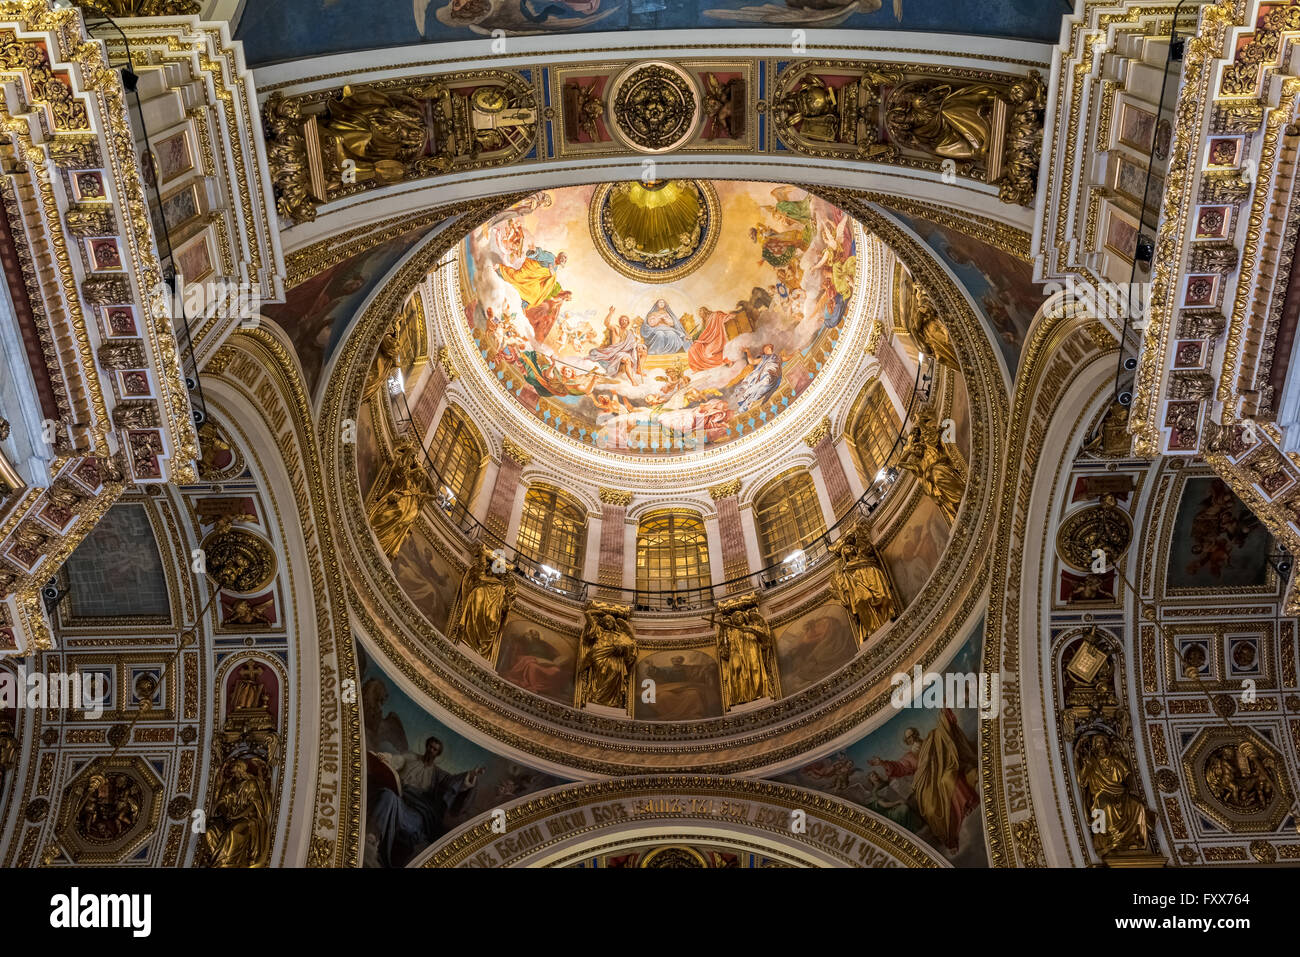 SAINT-PÉTERSBOURG, RUSSIE - 16 mai 2015 : - l'intérieur de la cathédrale Saint-Isaac, le 16 mai 2015, à Saint-Pétersbourg, Fédération de Russie Banque D'Images